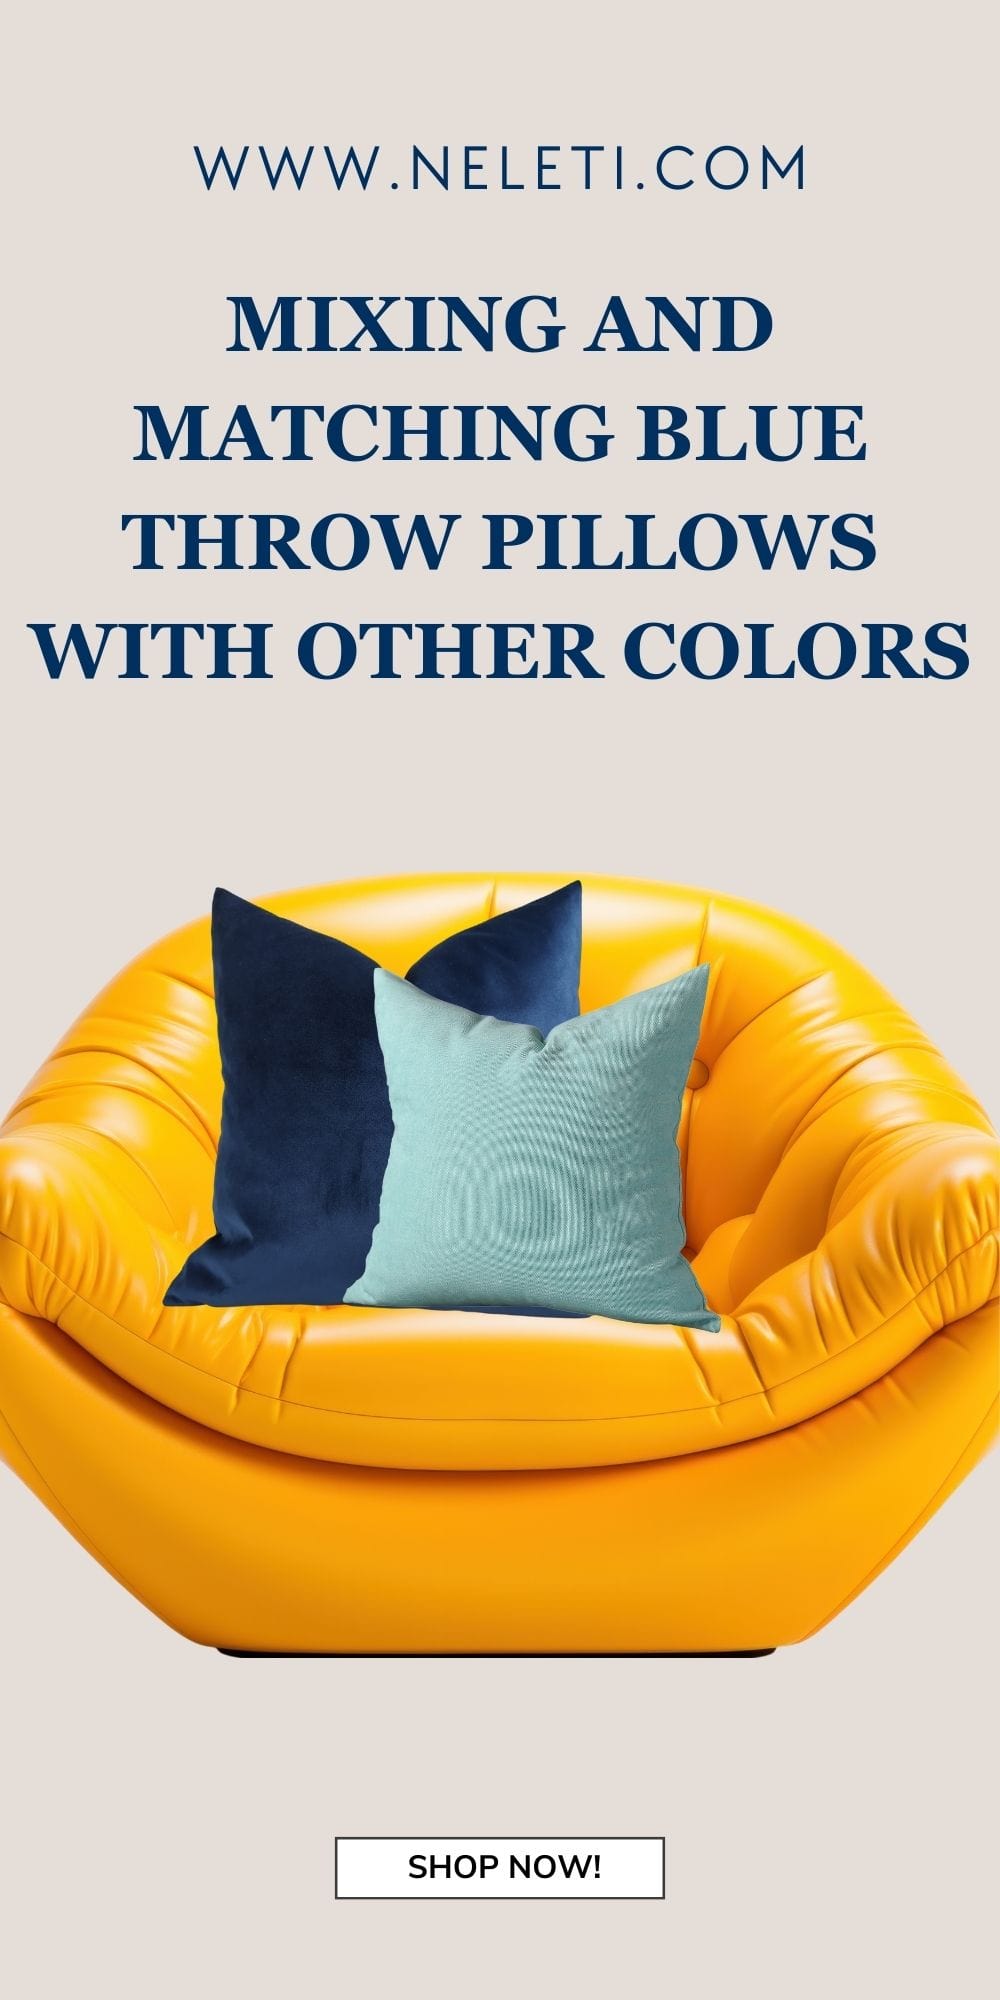 neleti.com-blue-throw-pillows